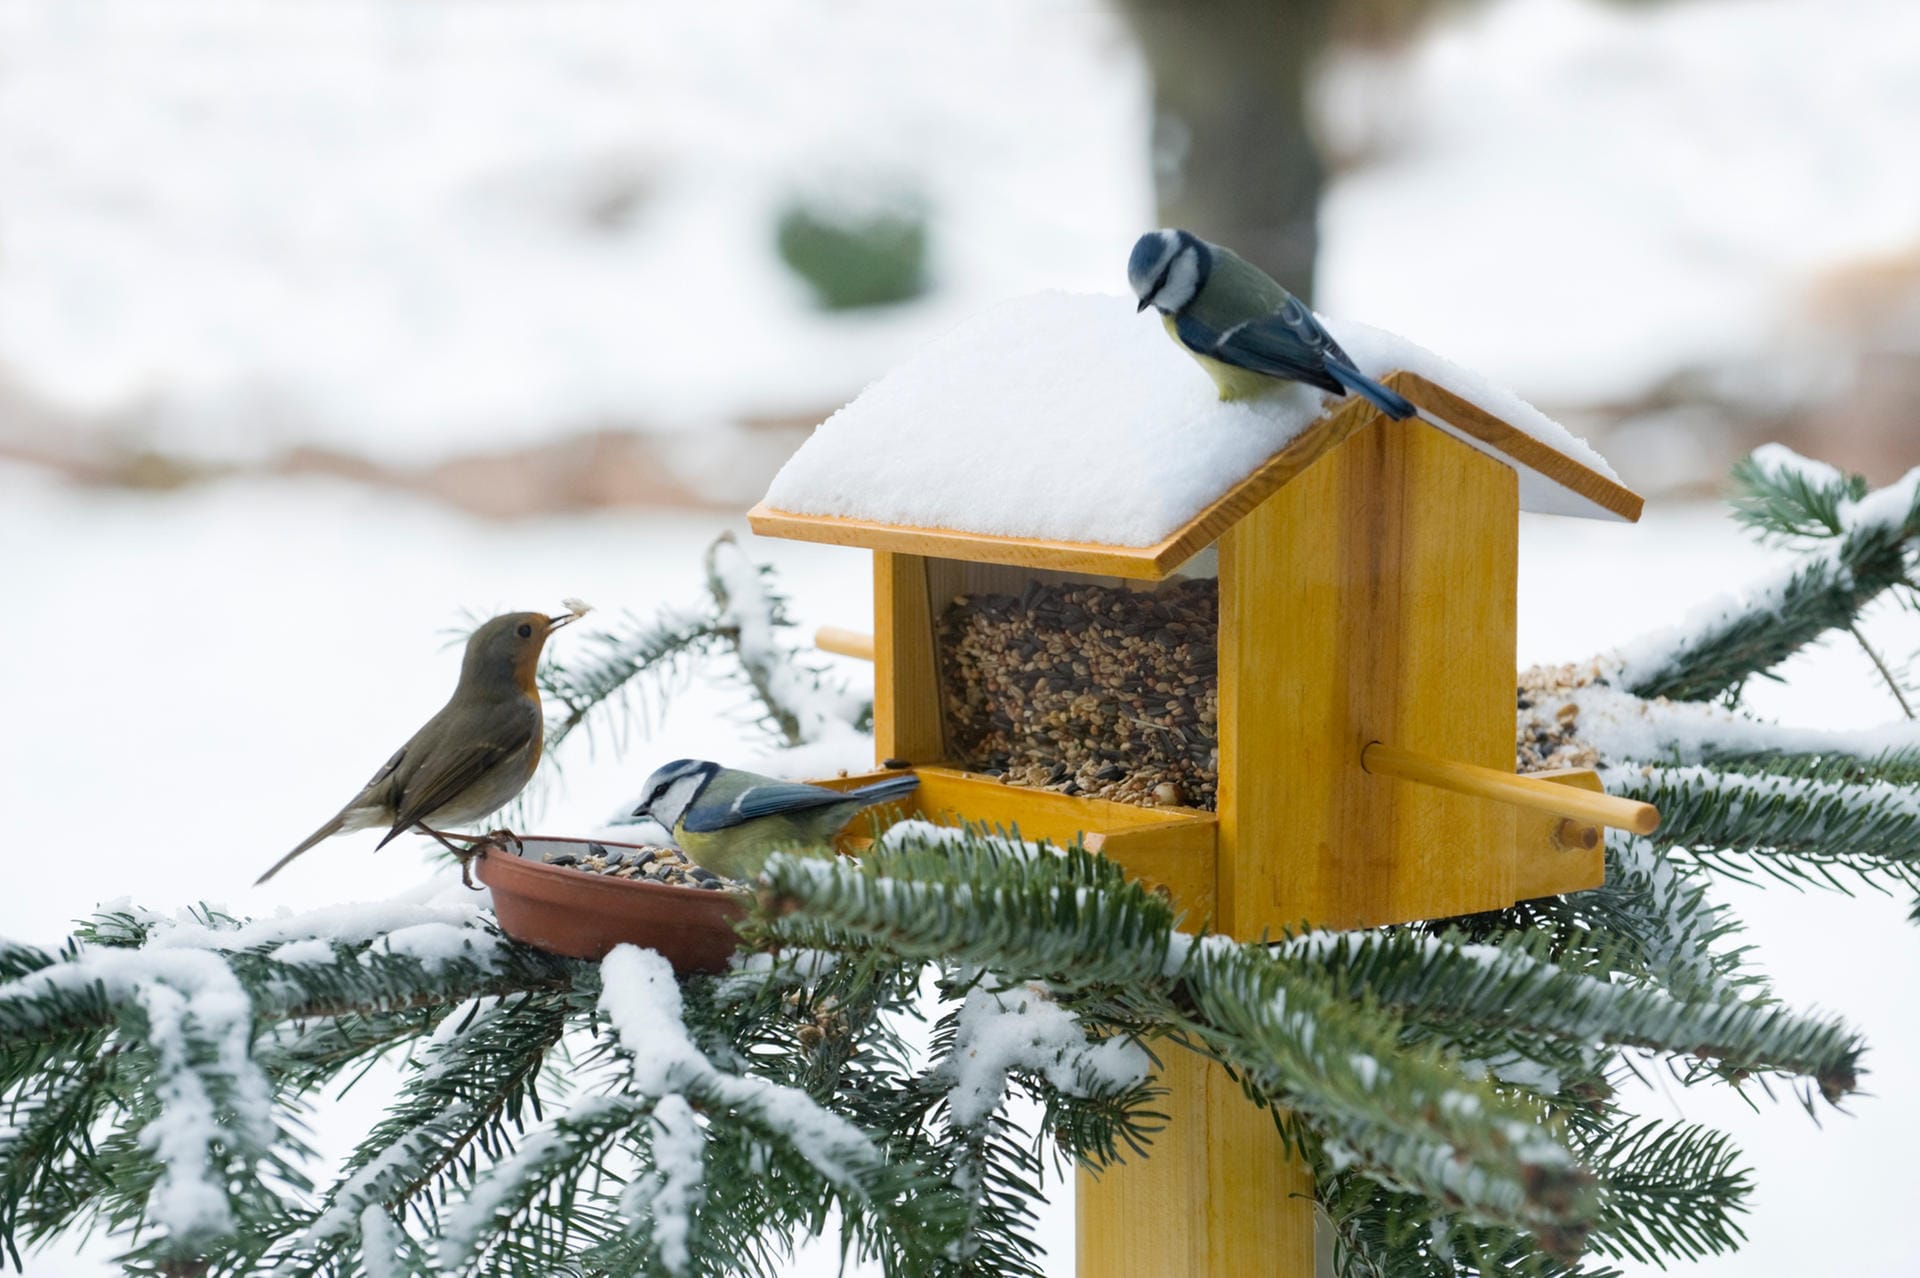 Vögel: Futterstellen sind für viele Arten im Winter lebensnotwendig. Neben Futter brauchen Vögel im Winter aber auch Wasser.